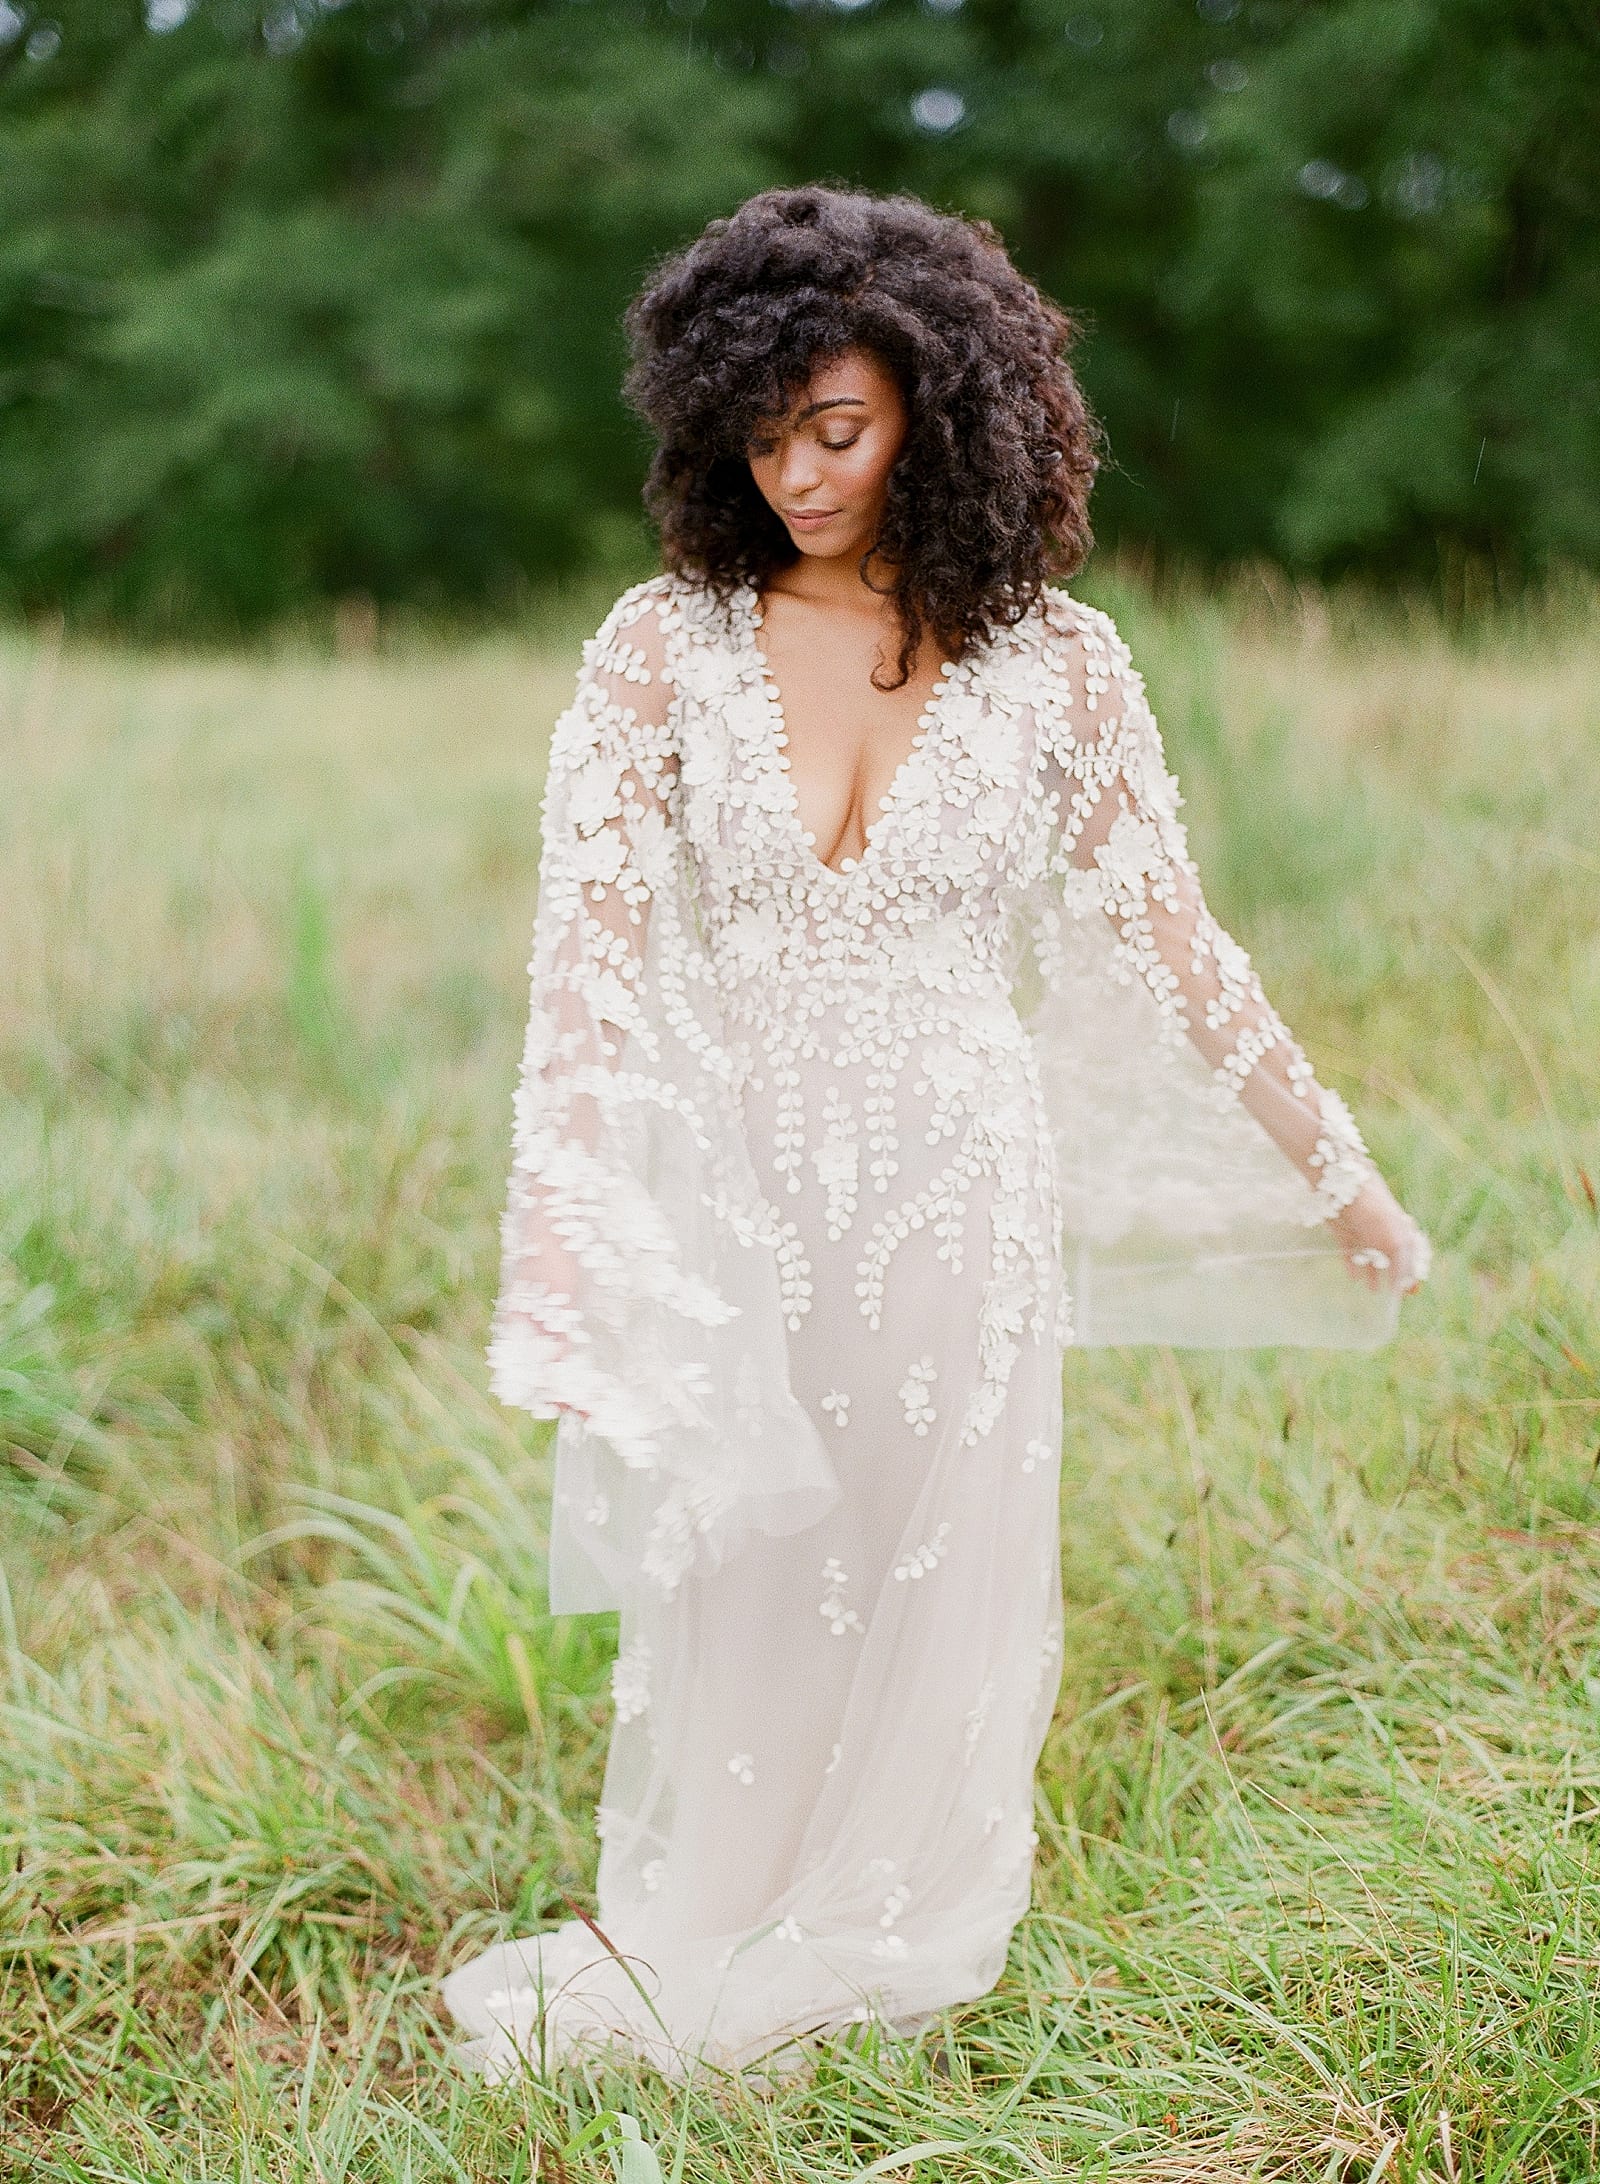 Bride in Dana Harel Design Gown twirling in field Photo